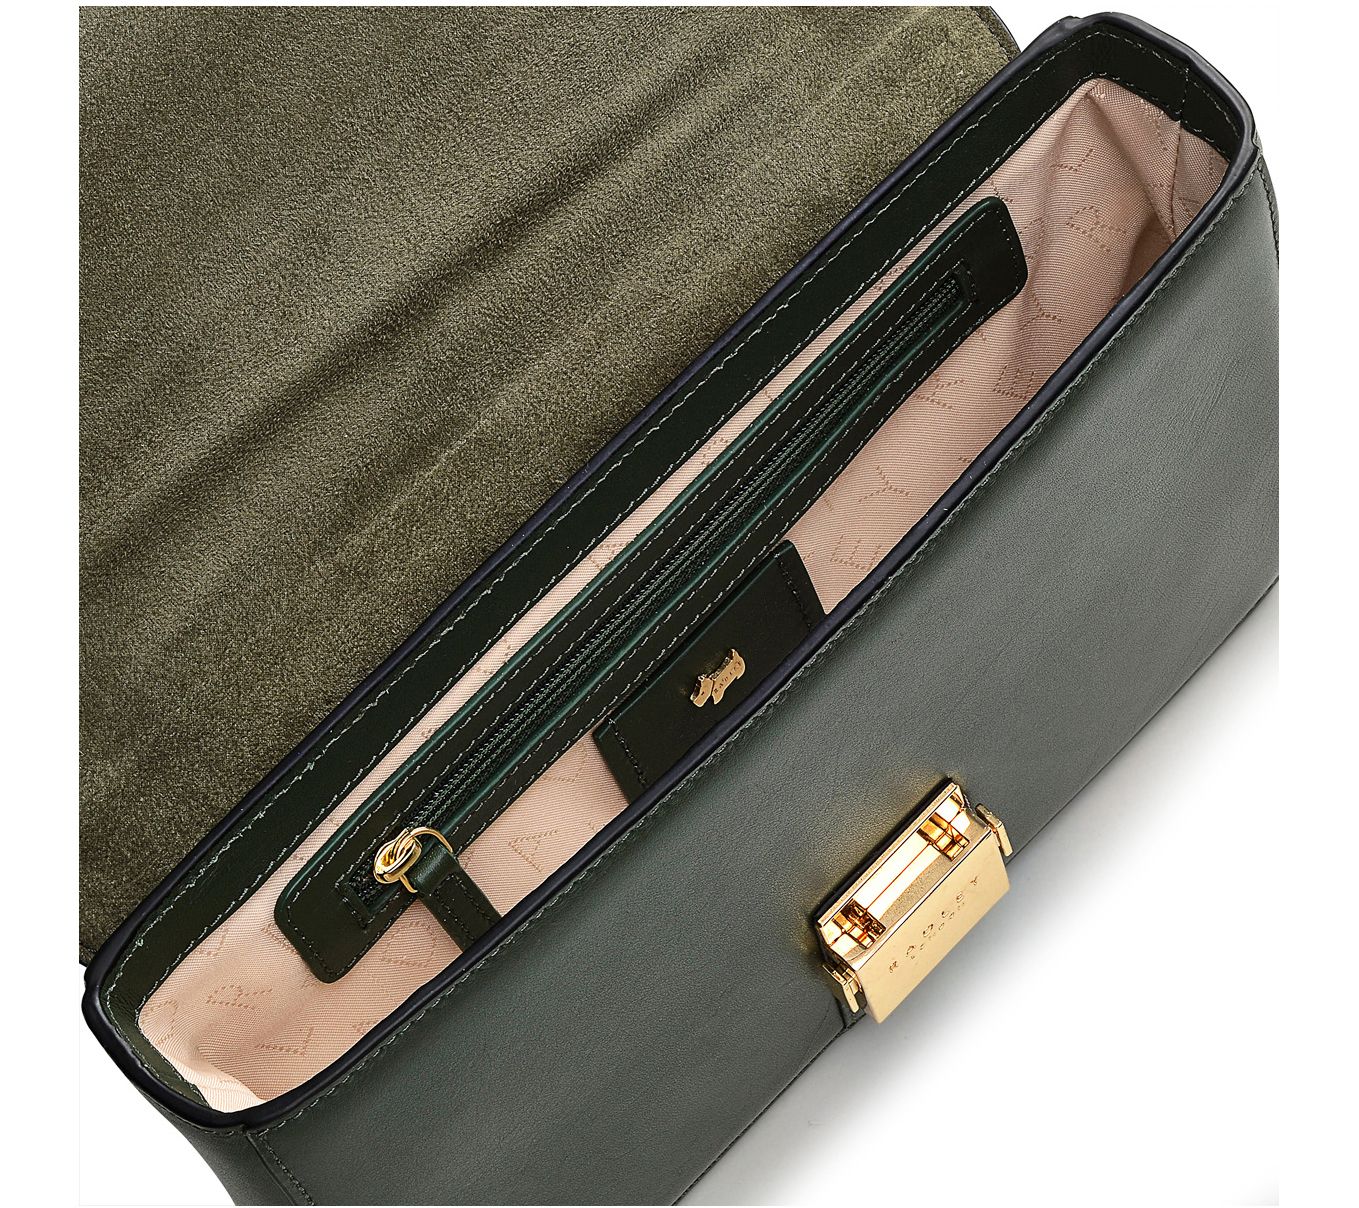 RADLEY London Hanley Close - Medium Flapover Shoulder: Handbags